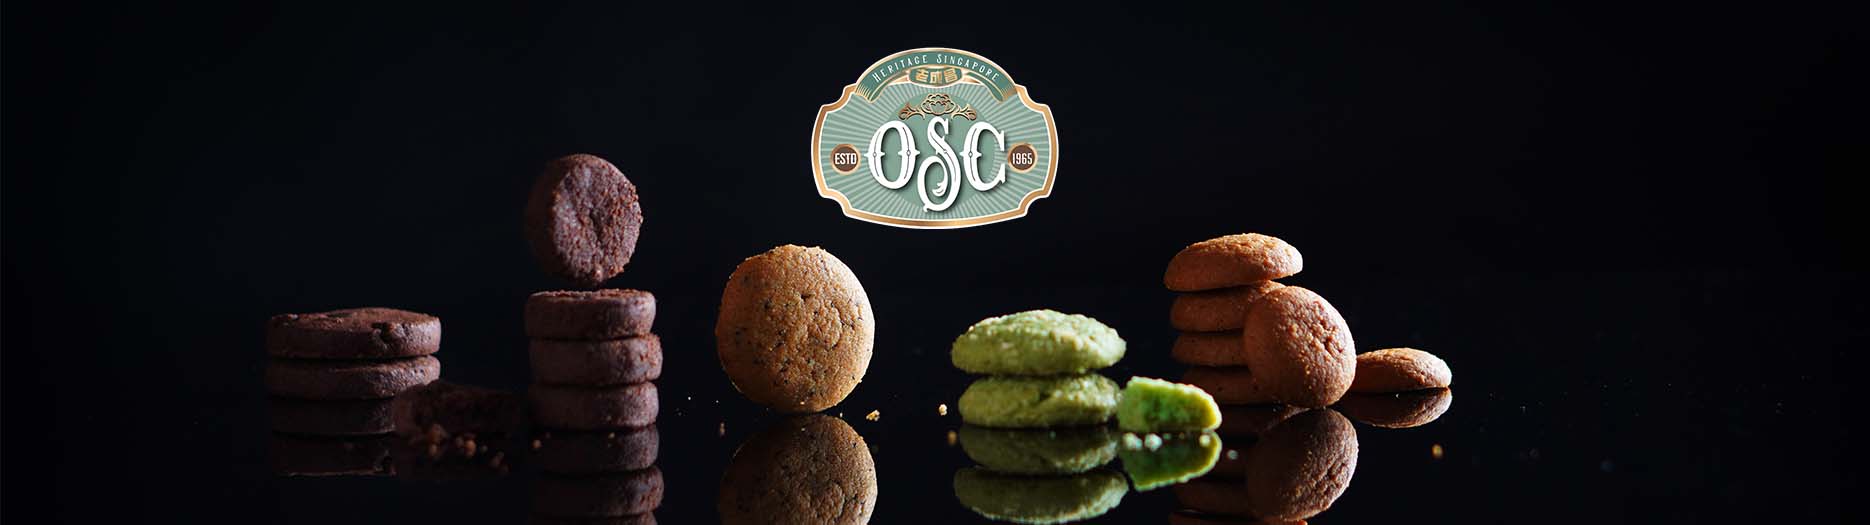 OSC Promo Banner images